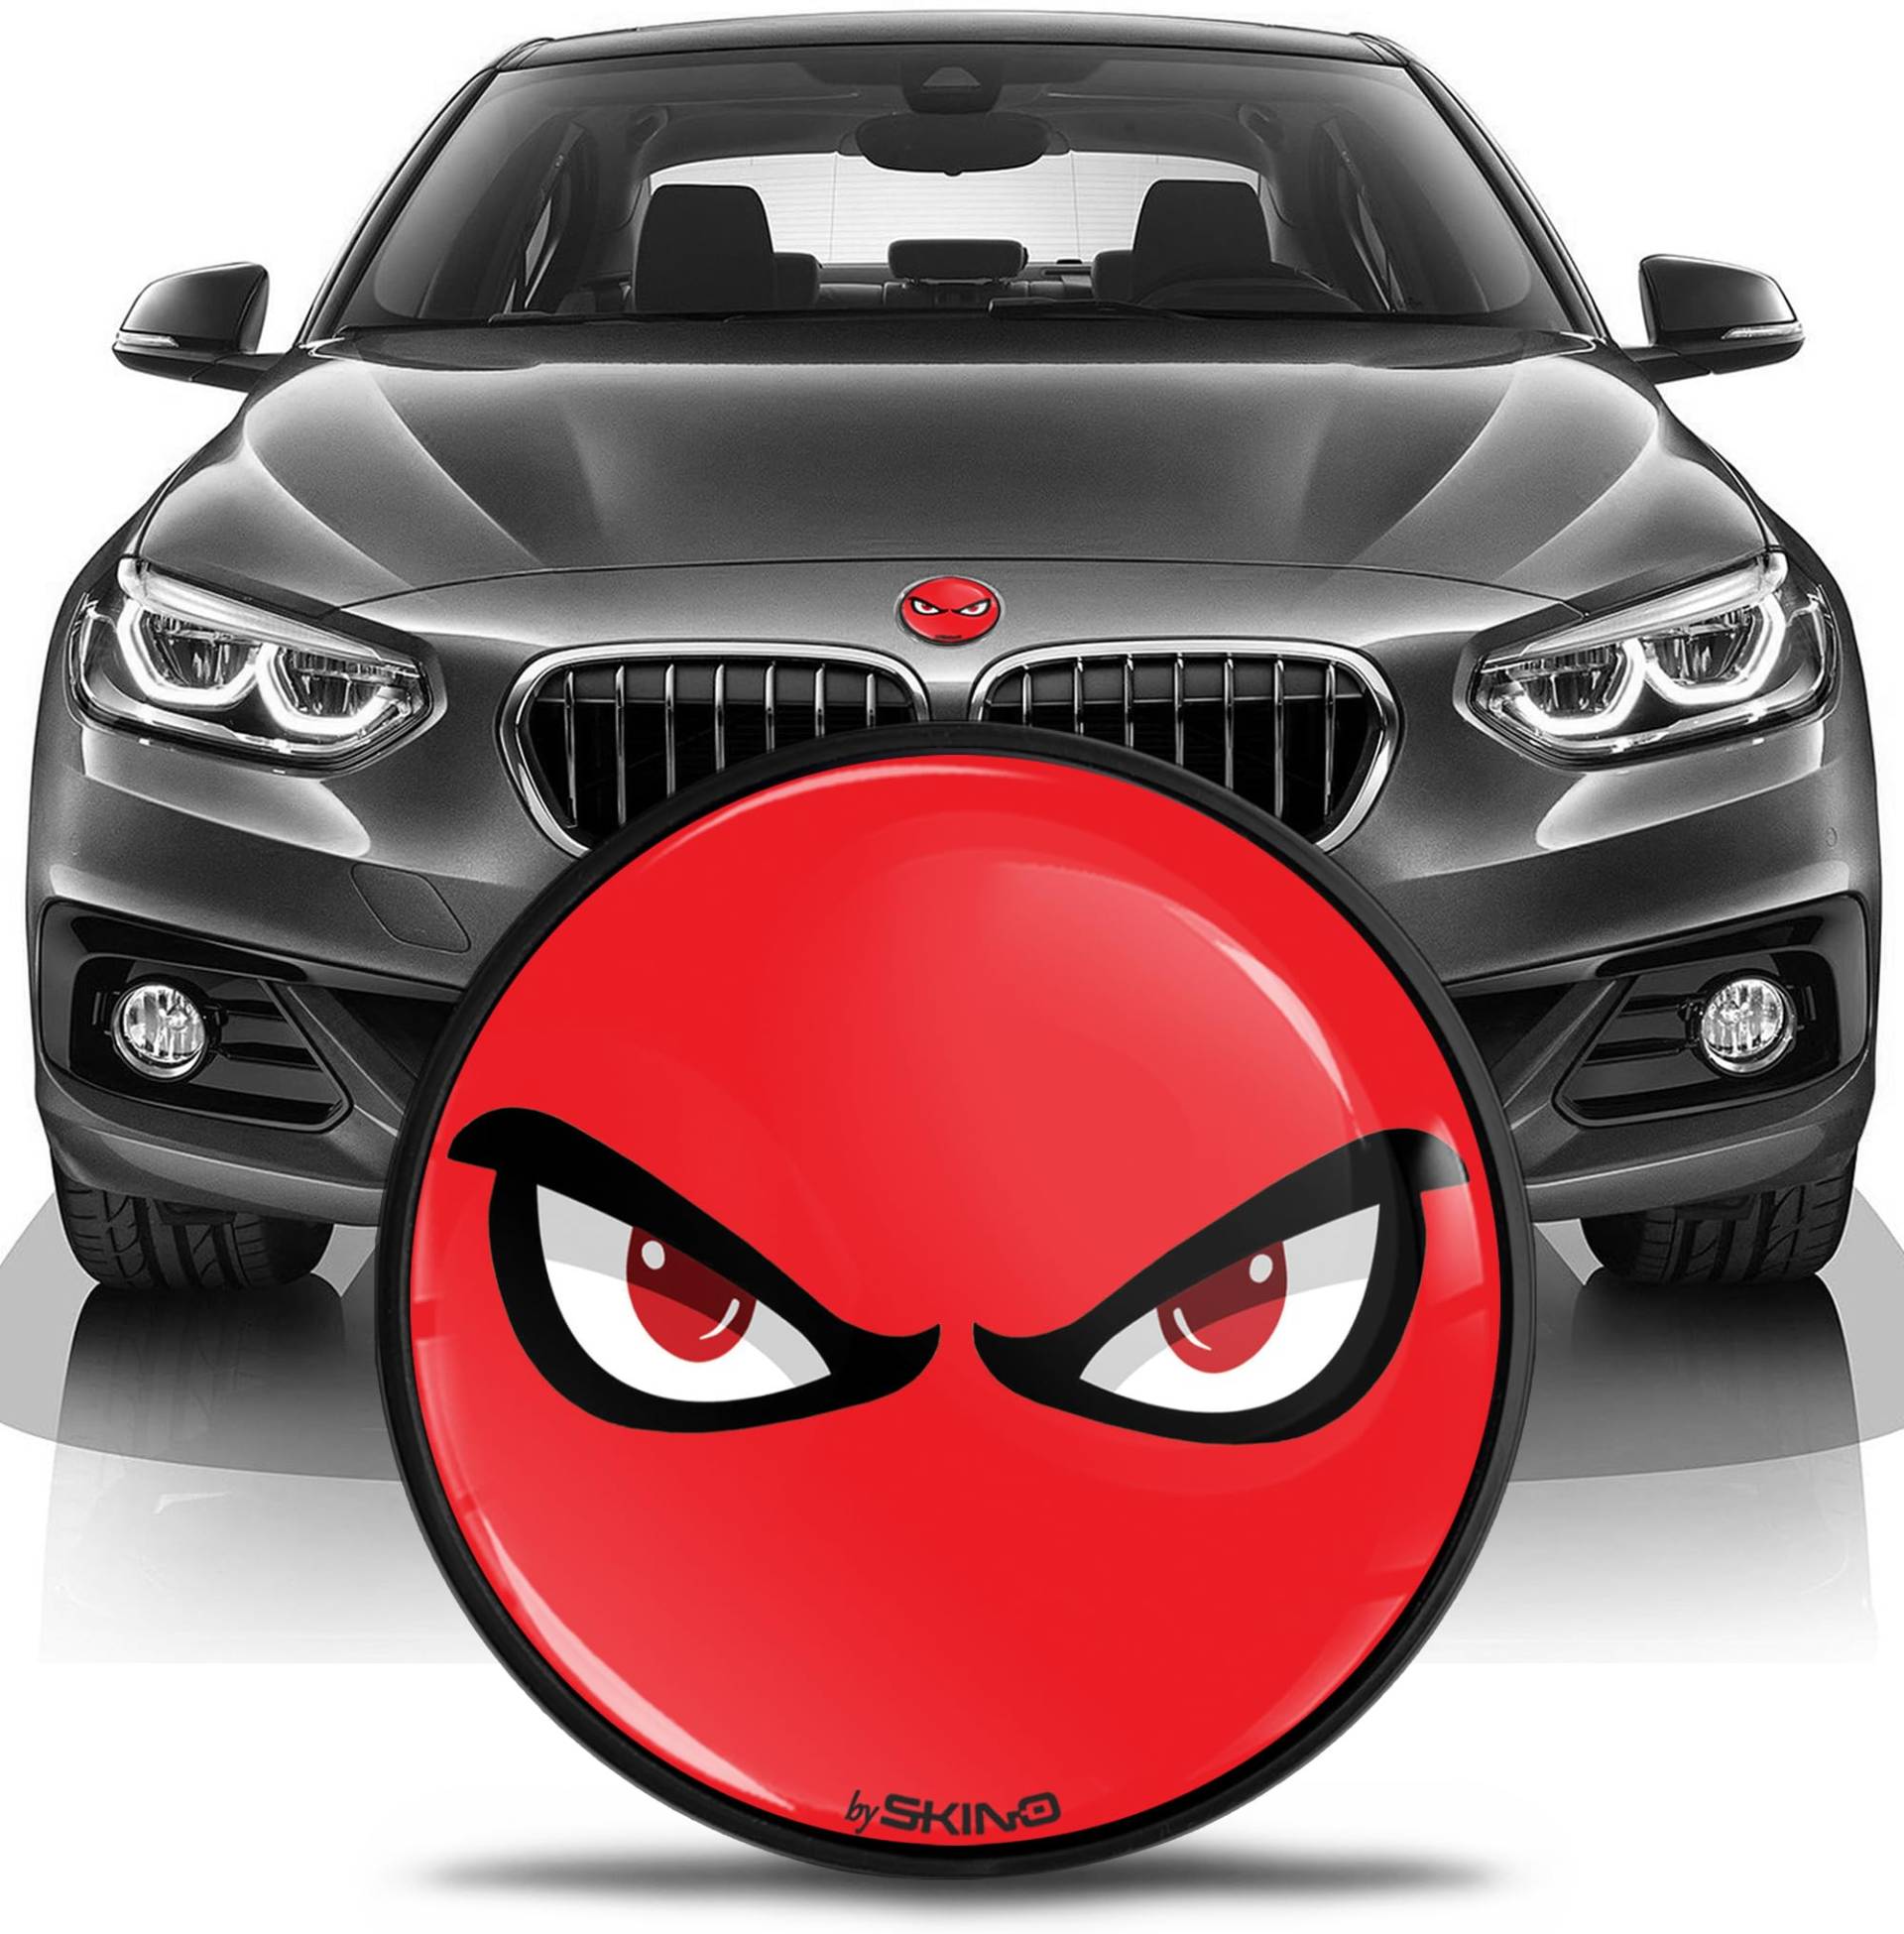 SkinoEu Kompatibel mit BMW Emblem 51147057794 für Motorhaube Kofferraum Plakette Abzeichen Heckklappe 82mm E81 E87 F07 GT F10 F11 F18 E63 E64 F06 GC F12 F13 Z4 E85 / E86 No Fear Rot EN 9 von SkinoEu